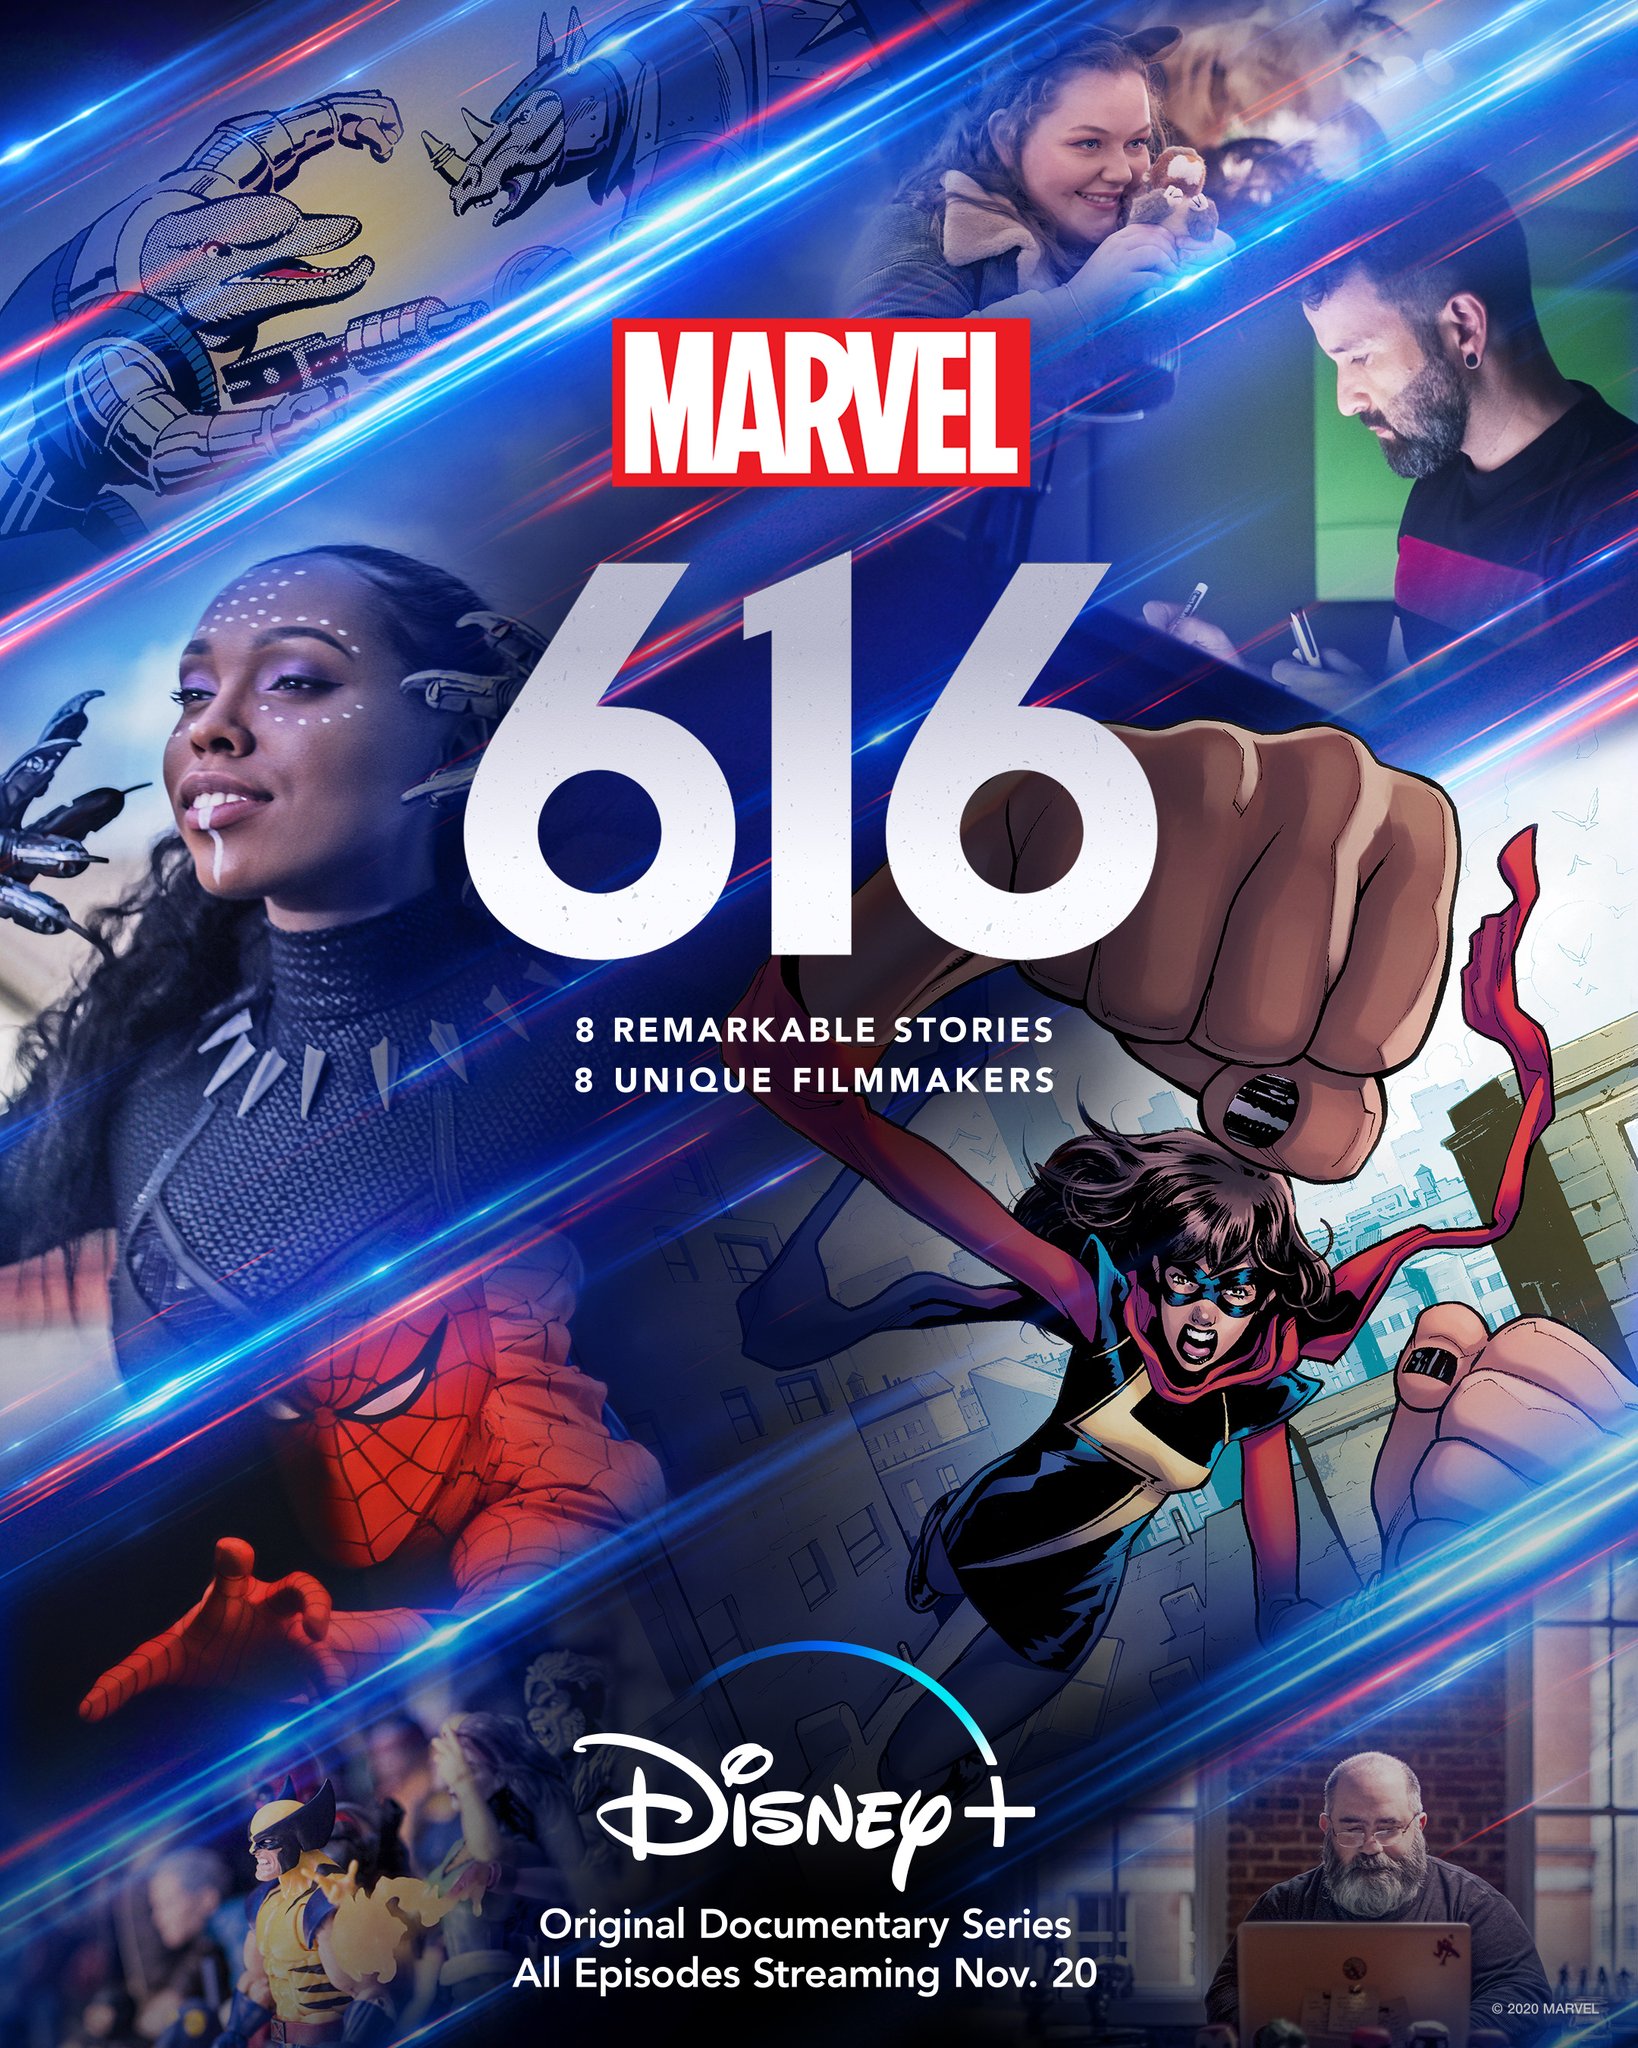 Universo Marvel 616: As Marvels faz $188 milhões em bilheteria após sua  terceira semana em cartaz